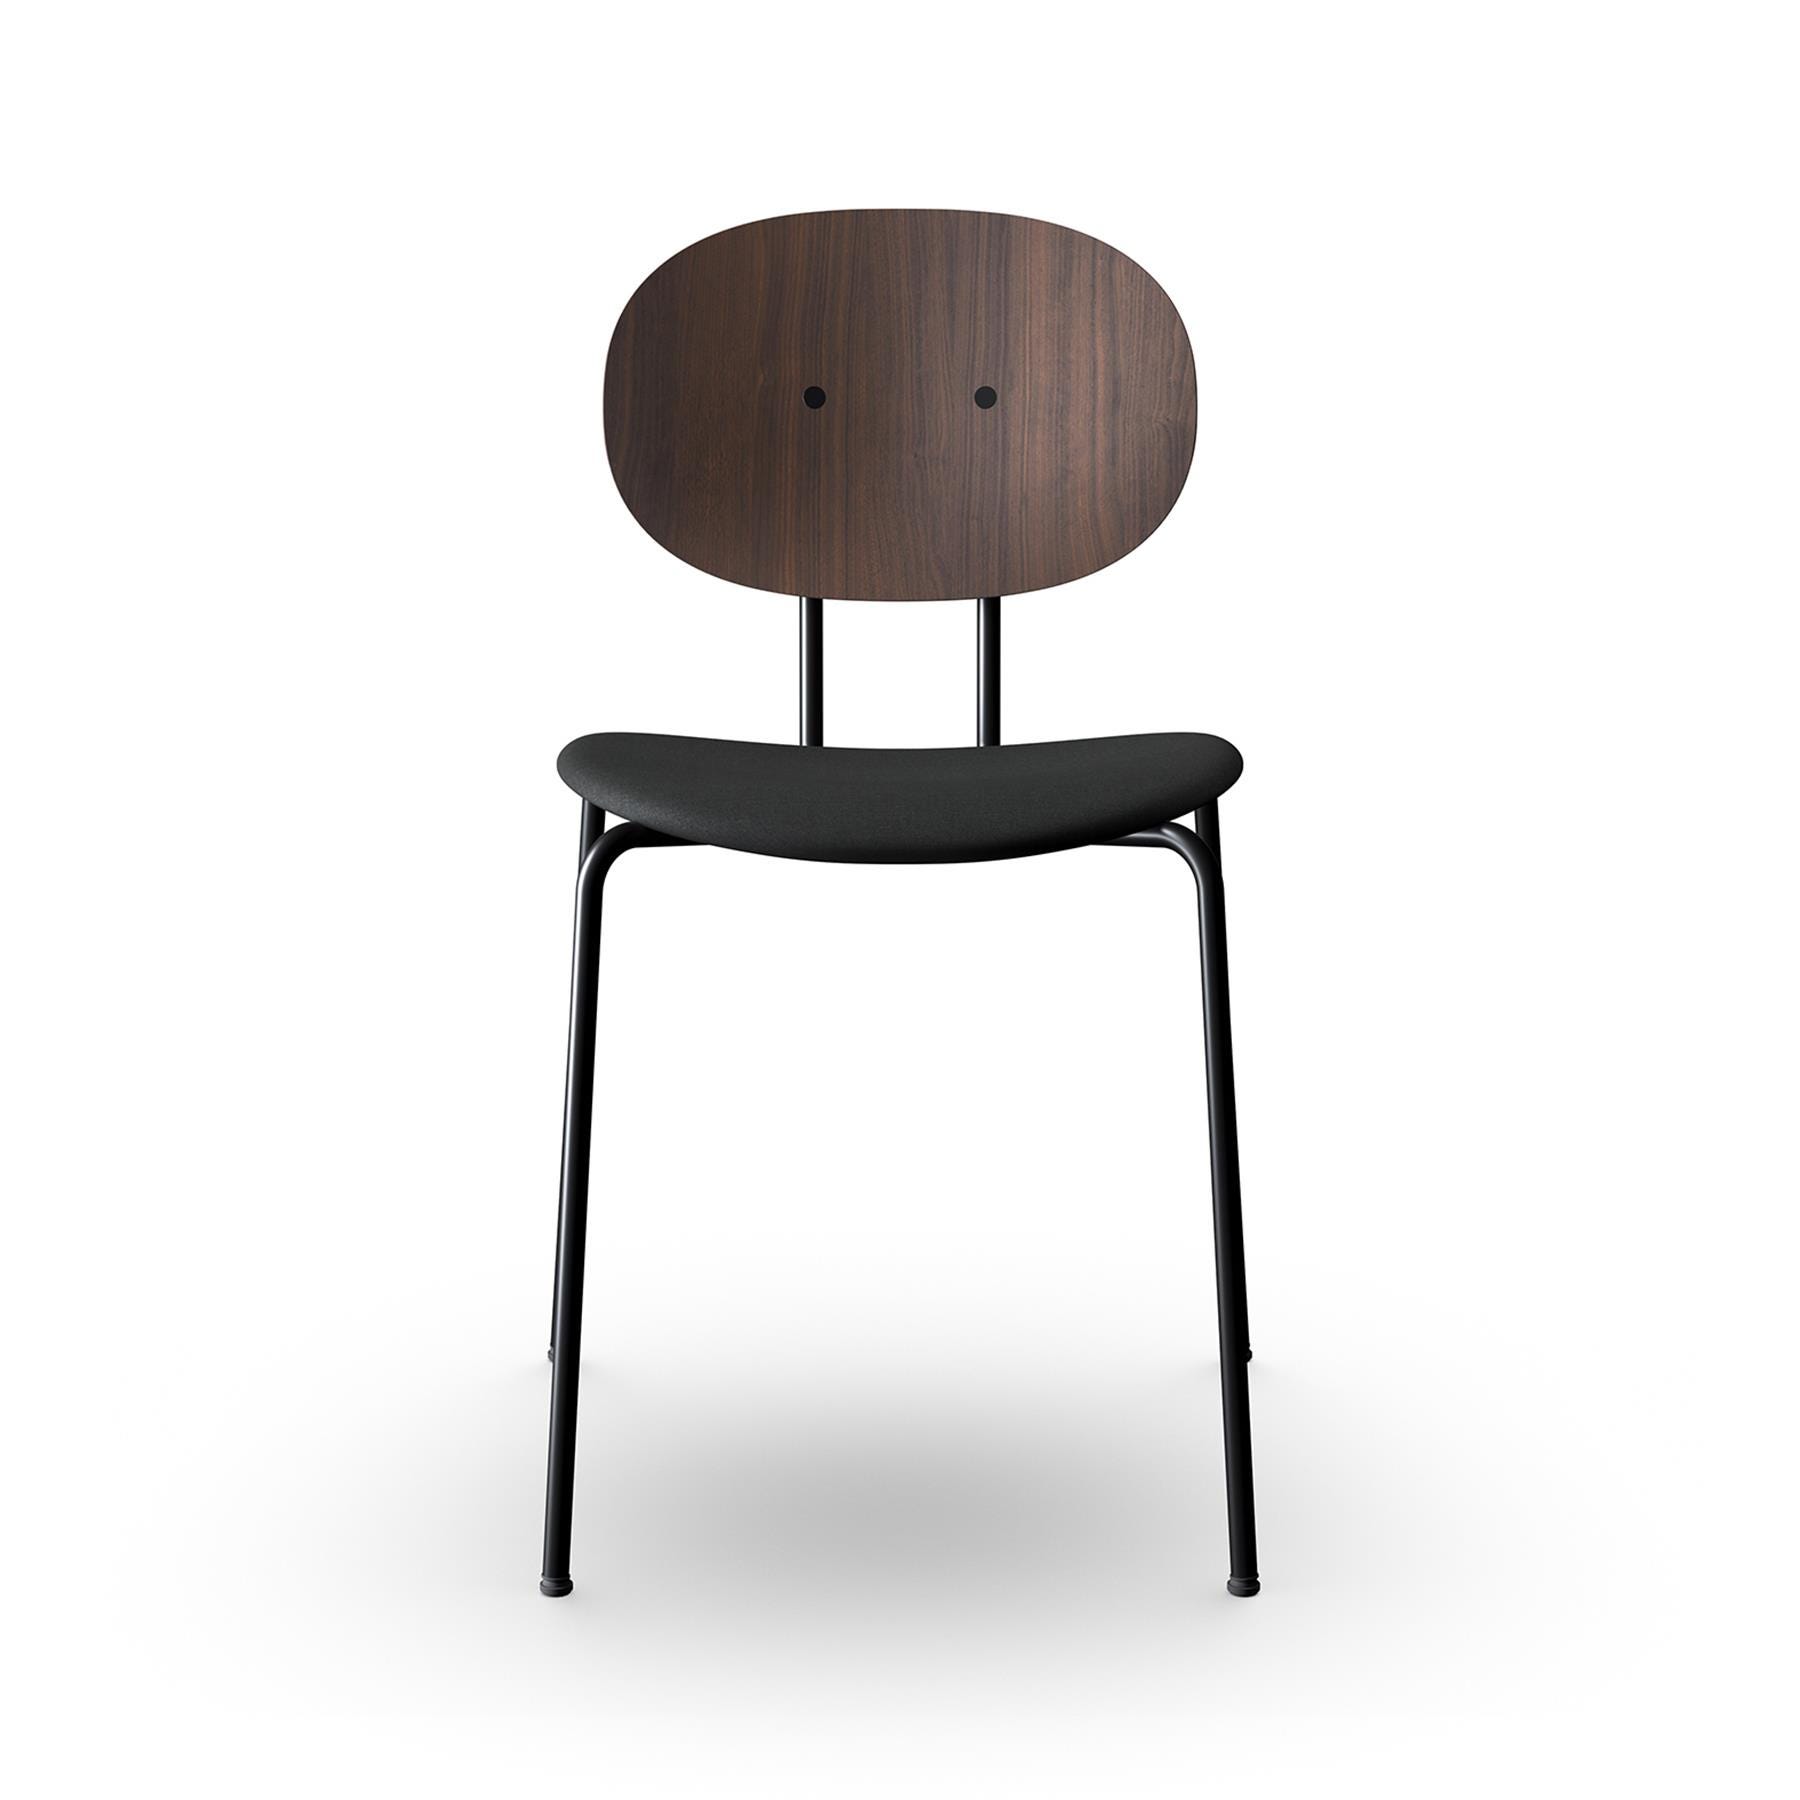 Sibast Piet Hein Dining Chair Black Steel Walnut Remix 383 Designer Furniture From Holloways Of Ludlow